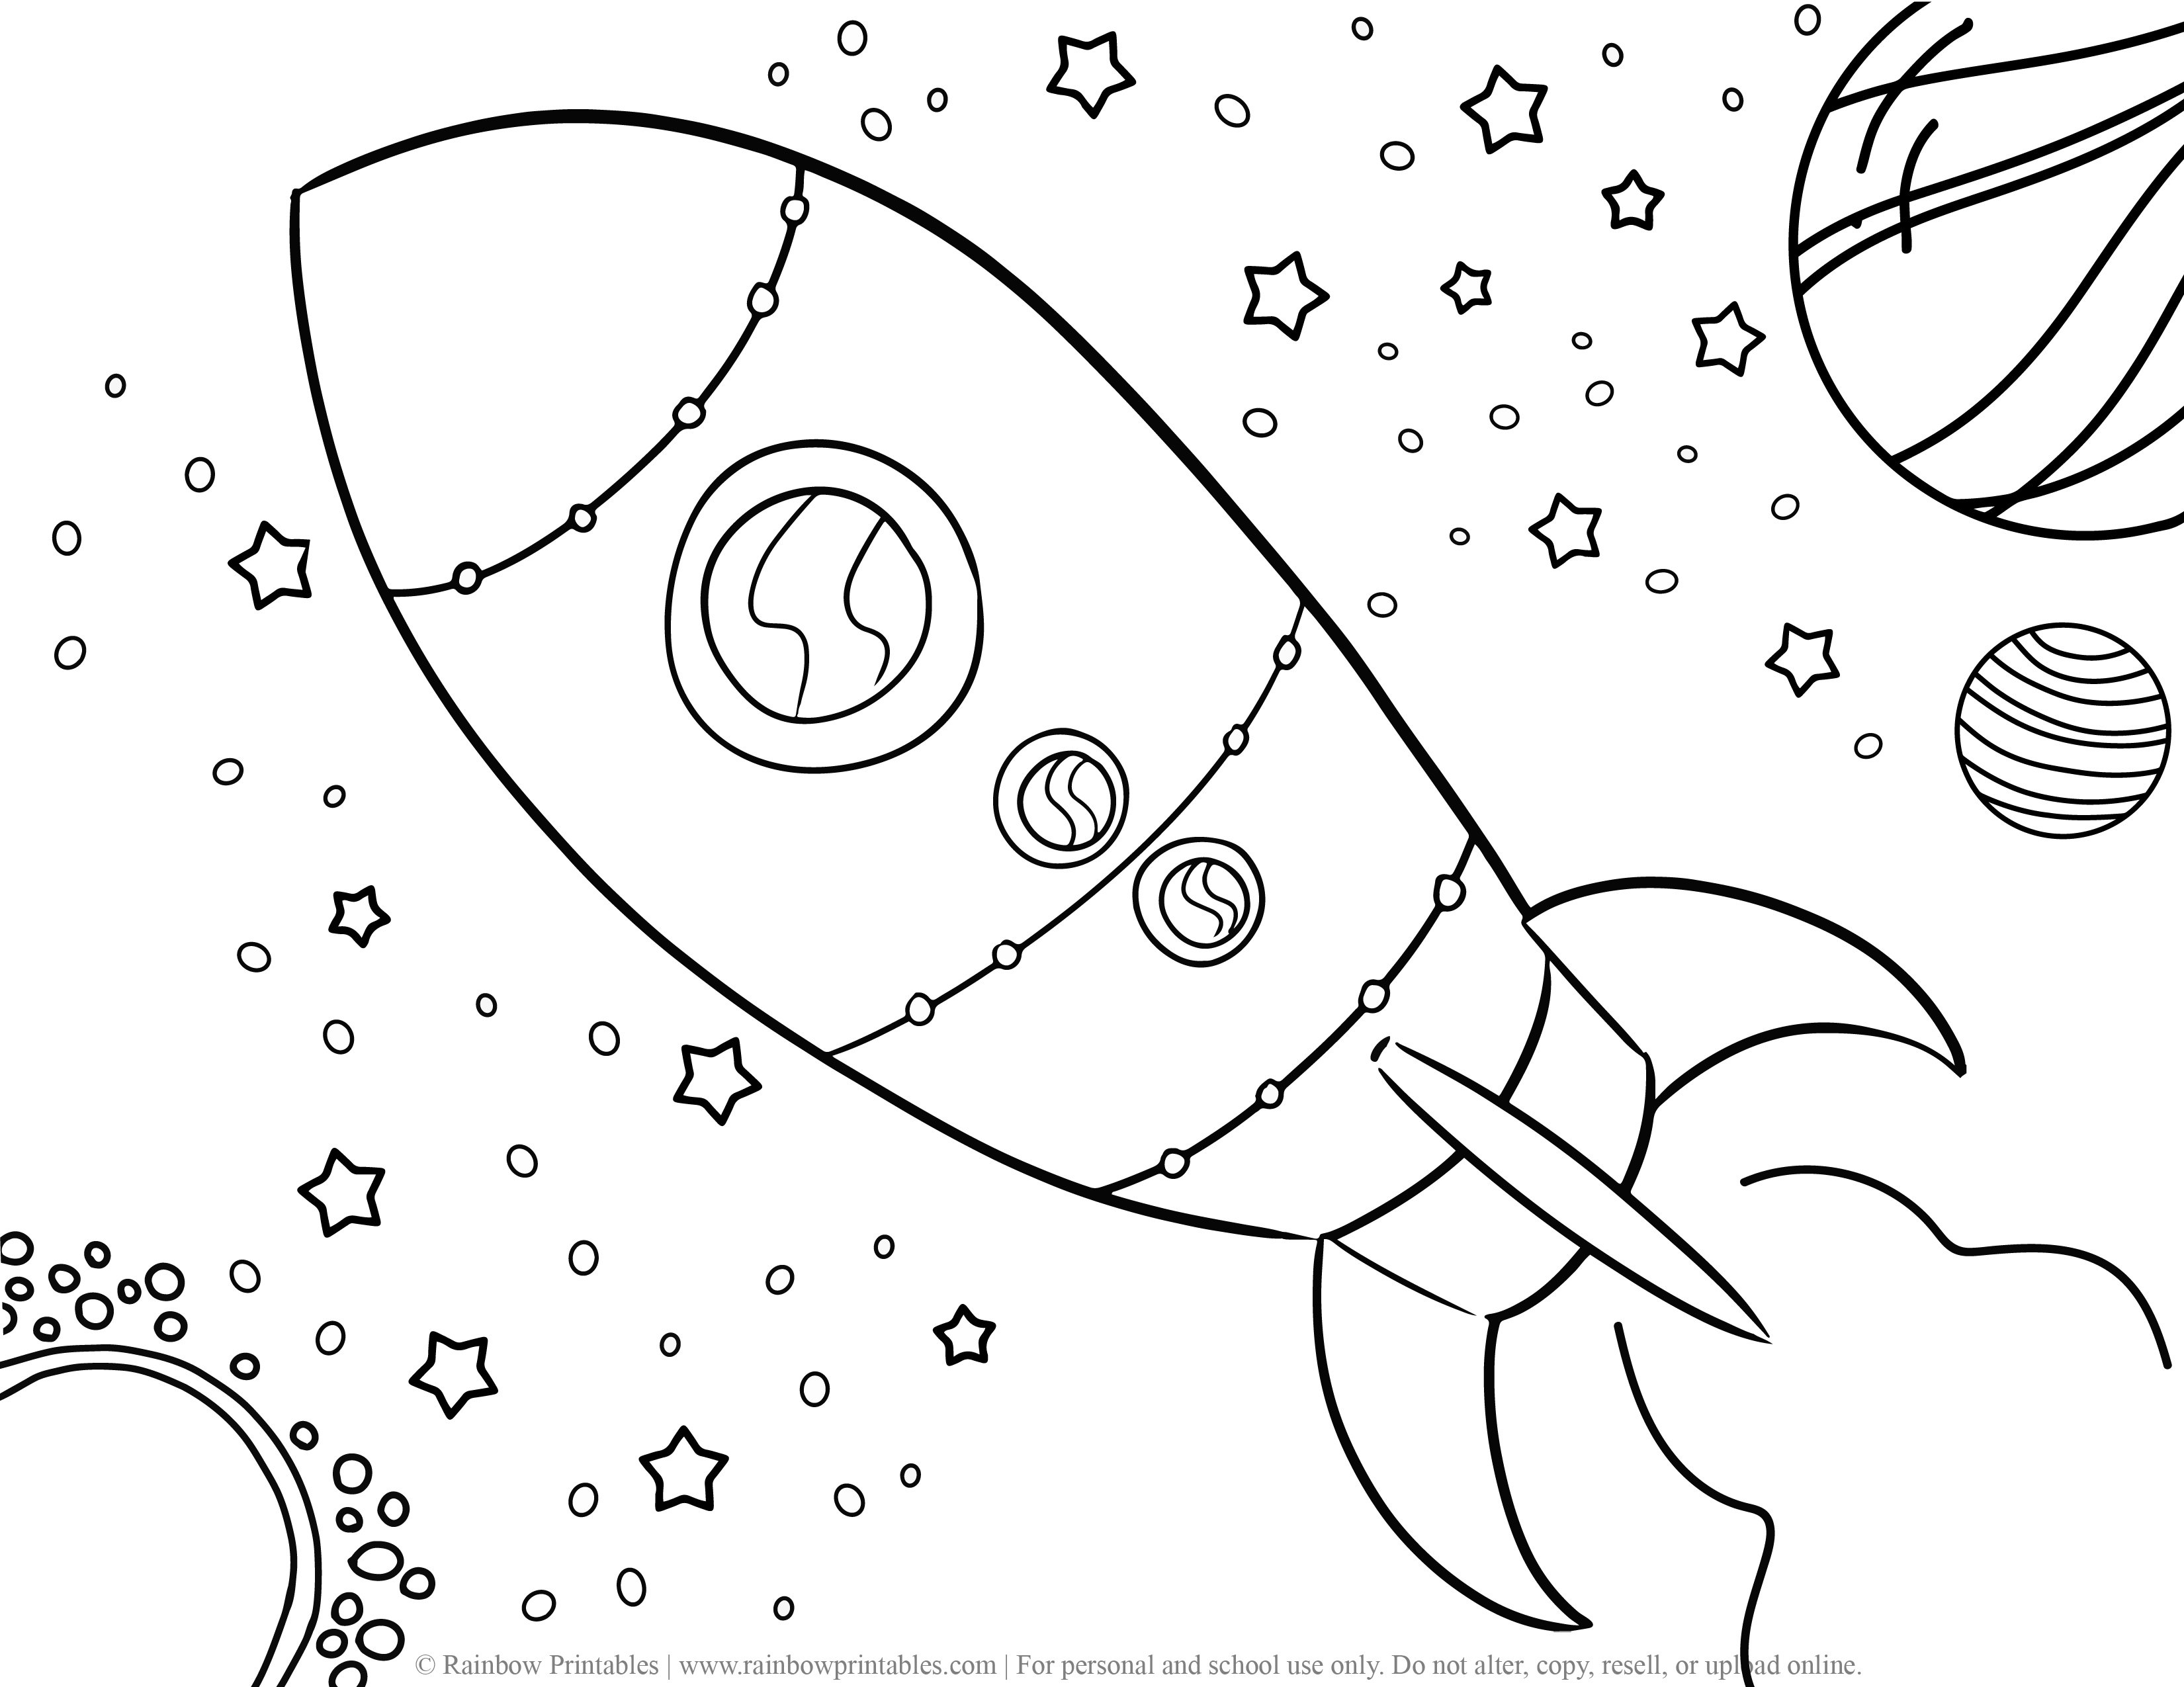 Раскраска космос и планеты. Космос раскраска для детей. Космос карандашом. Раскраска космос и планеты для детей. Раскраска для малышей. Космос.